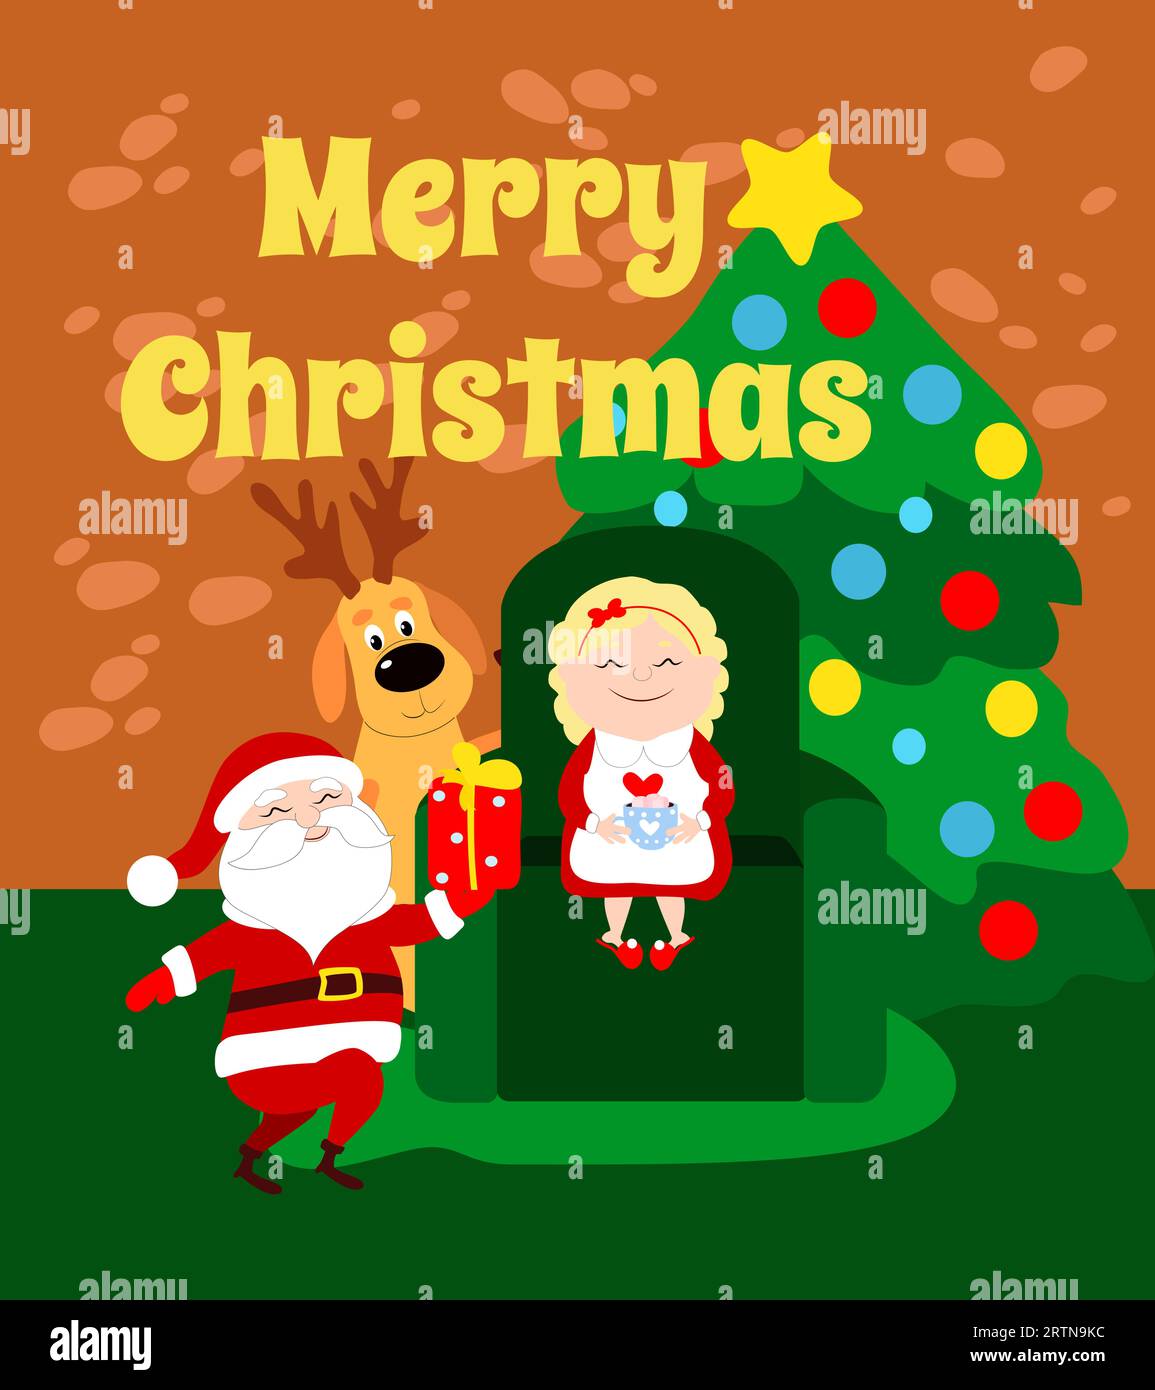 Der Weihnachtsmann hält ein Geschenk für Frau Santa. Weihnachtsmutter sitzt auf einer Couch im Haus und trinkt heiße Schokolade mit Marshmallows. Stock Vektor